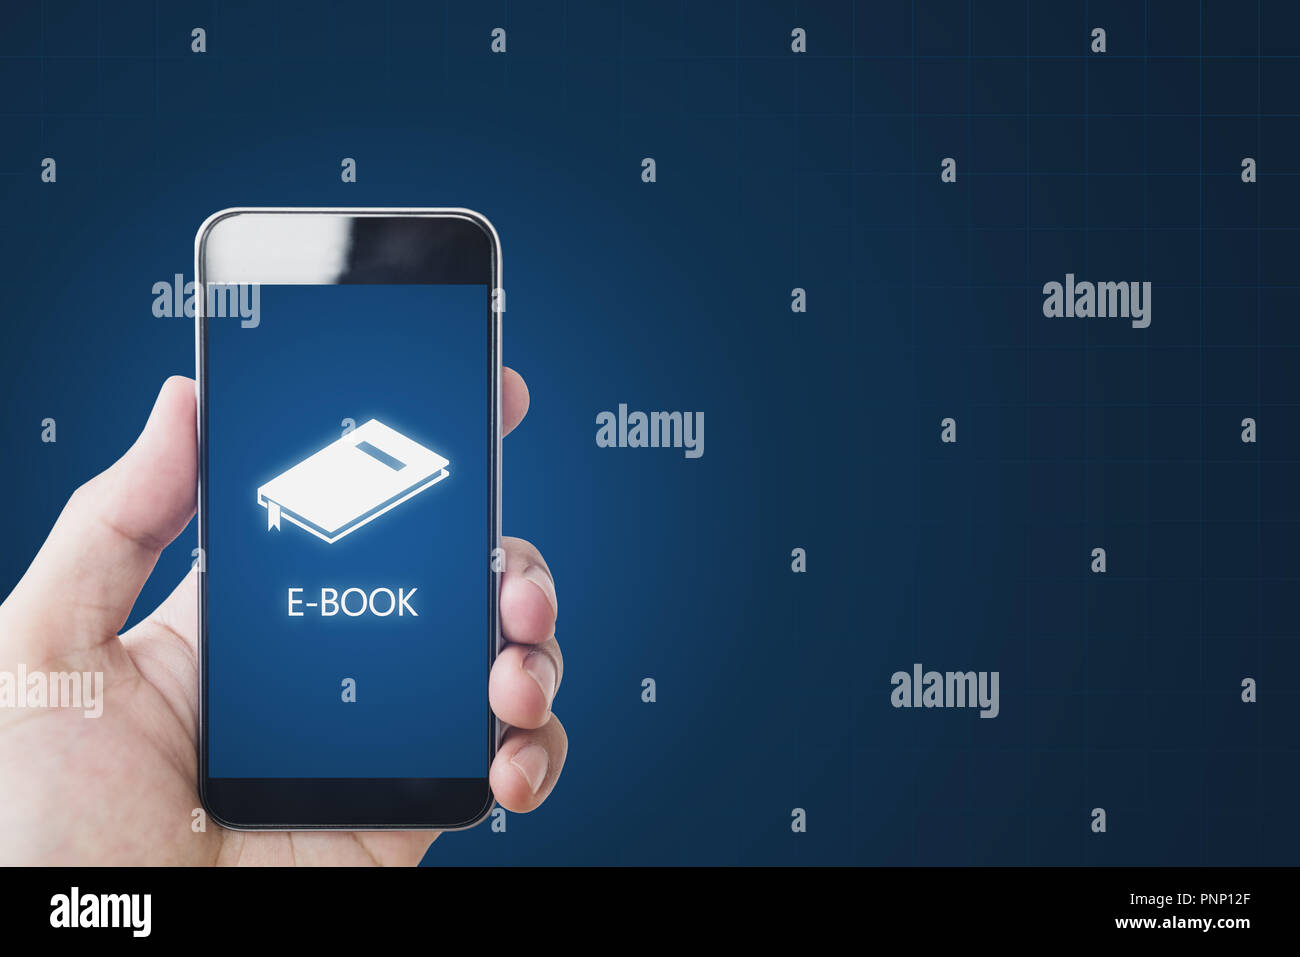 E-book sur le téléphone intelligent, la main à l'aide d'e-livre sur appareil mobile. L'éducation en ligne, e-learning et e-concept de livre Banque D'Images